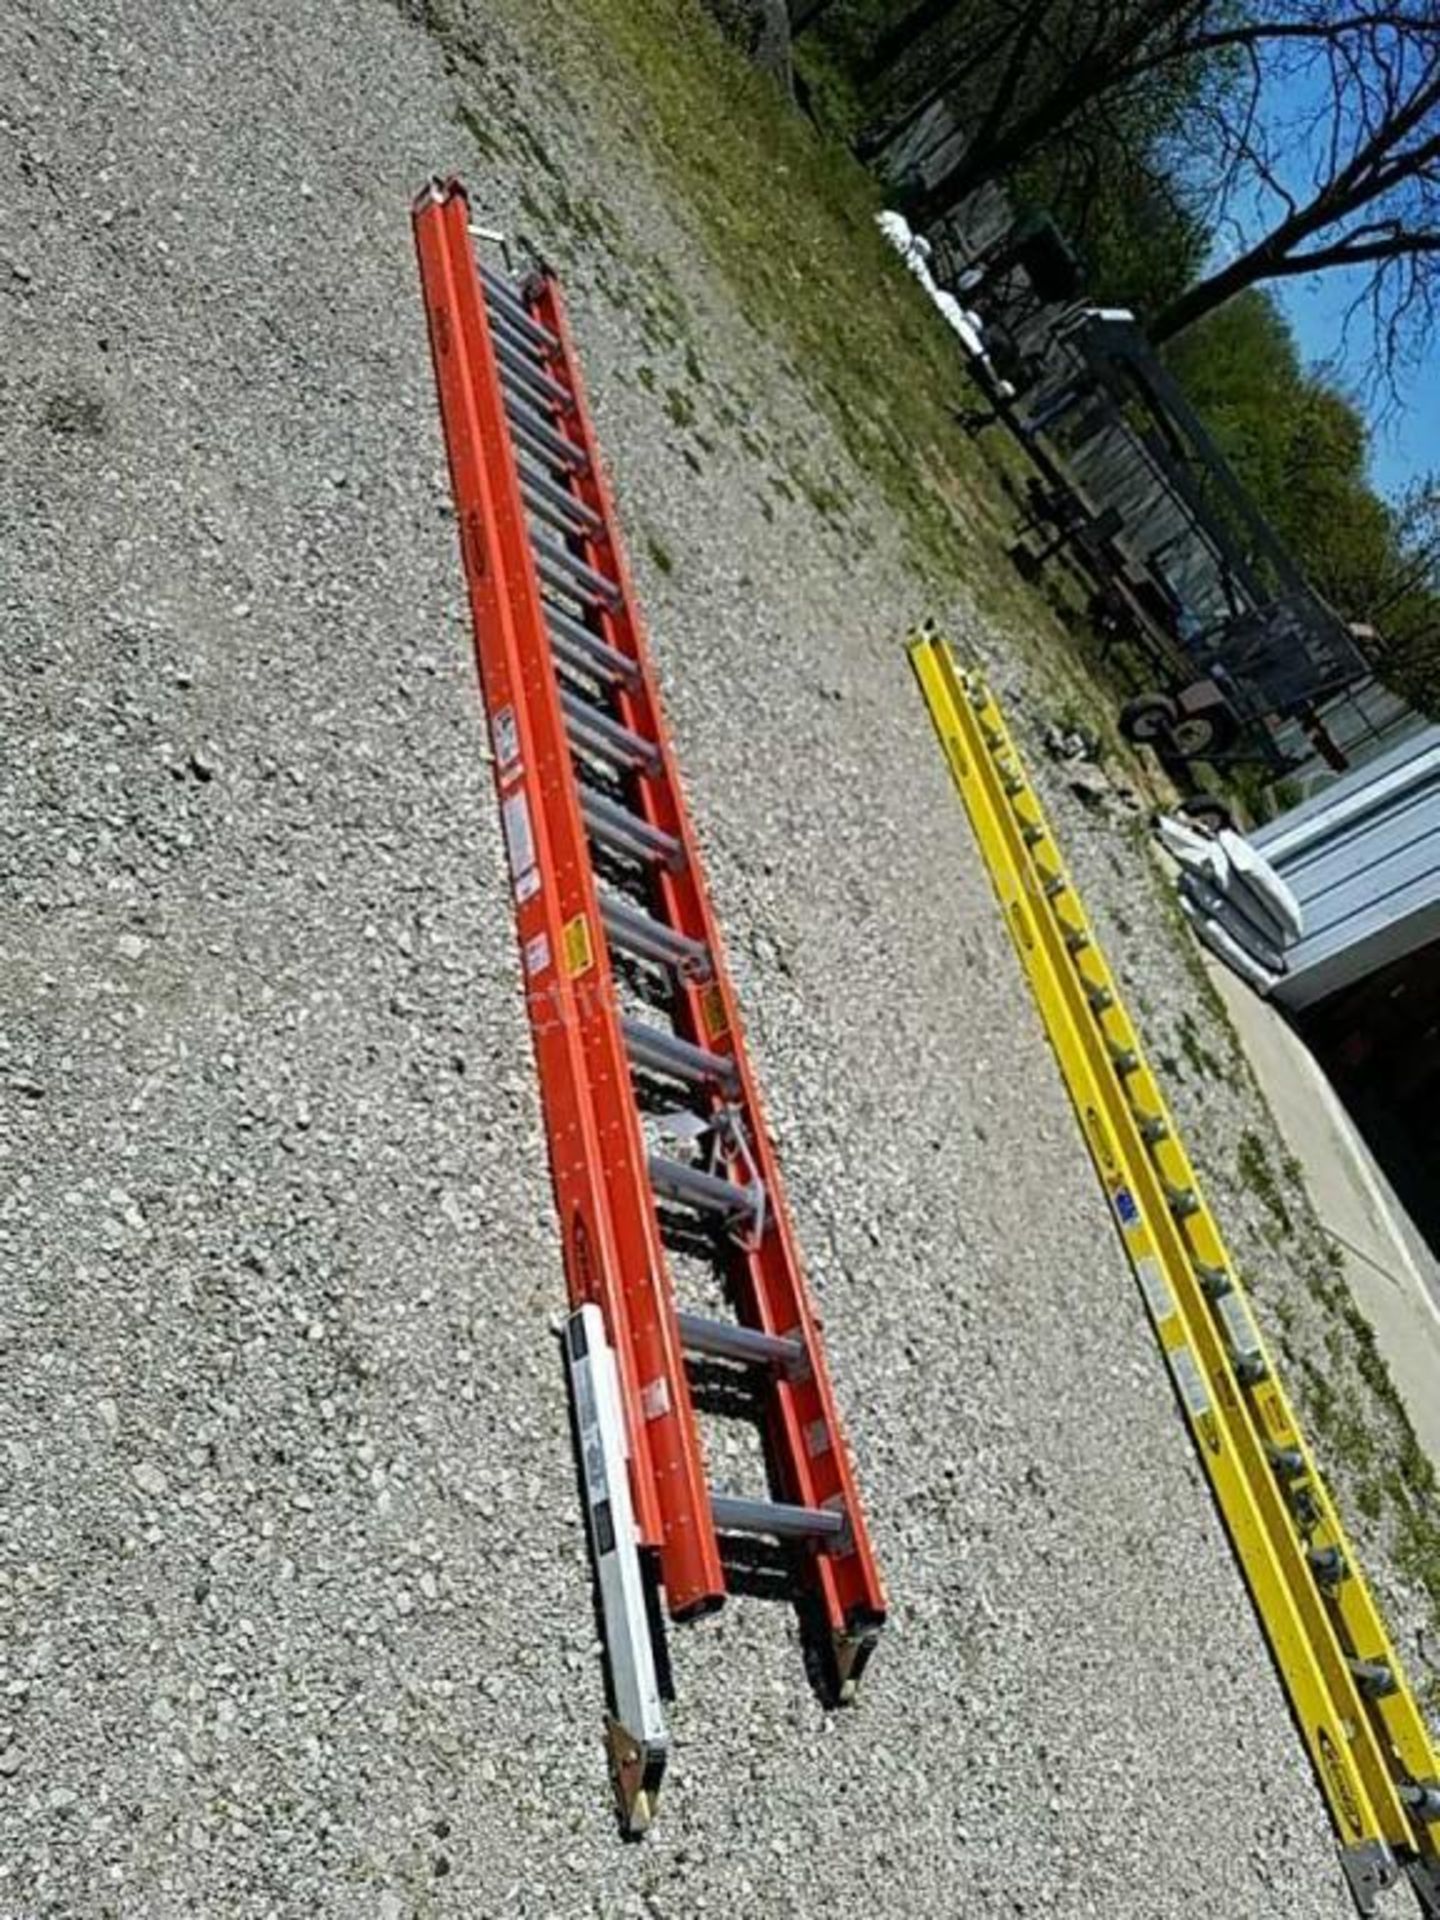 Werner 28' fiberglas extension ladder